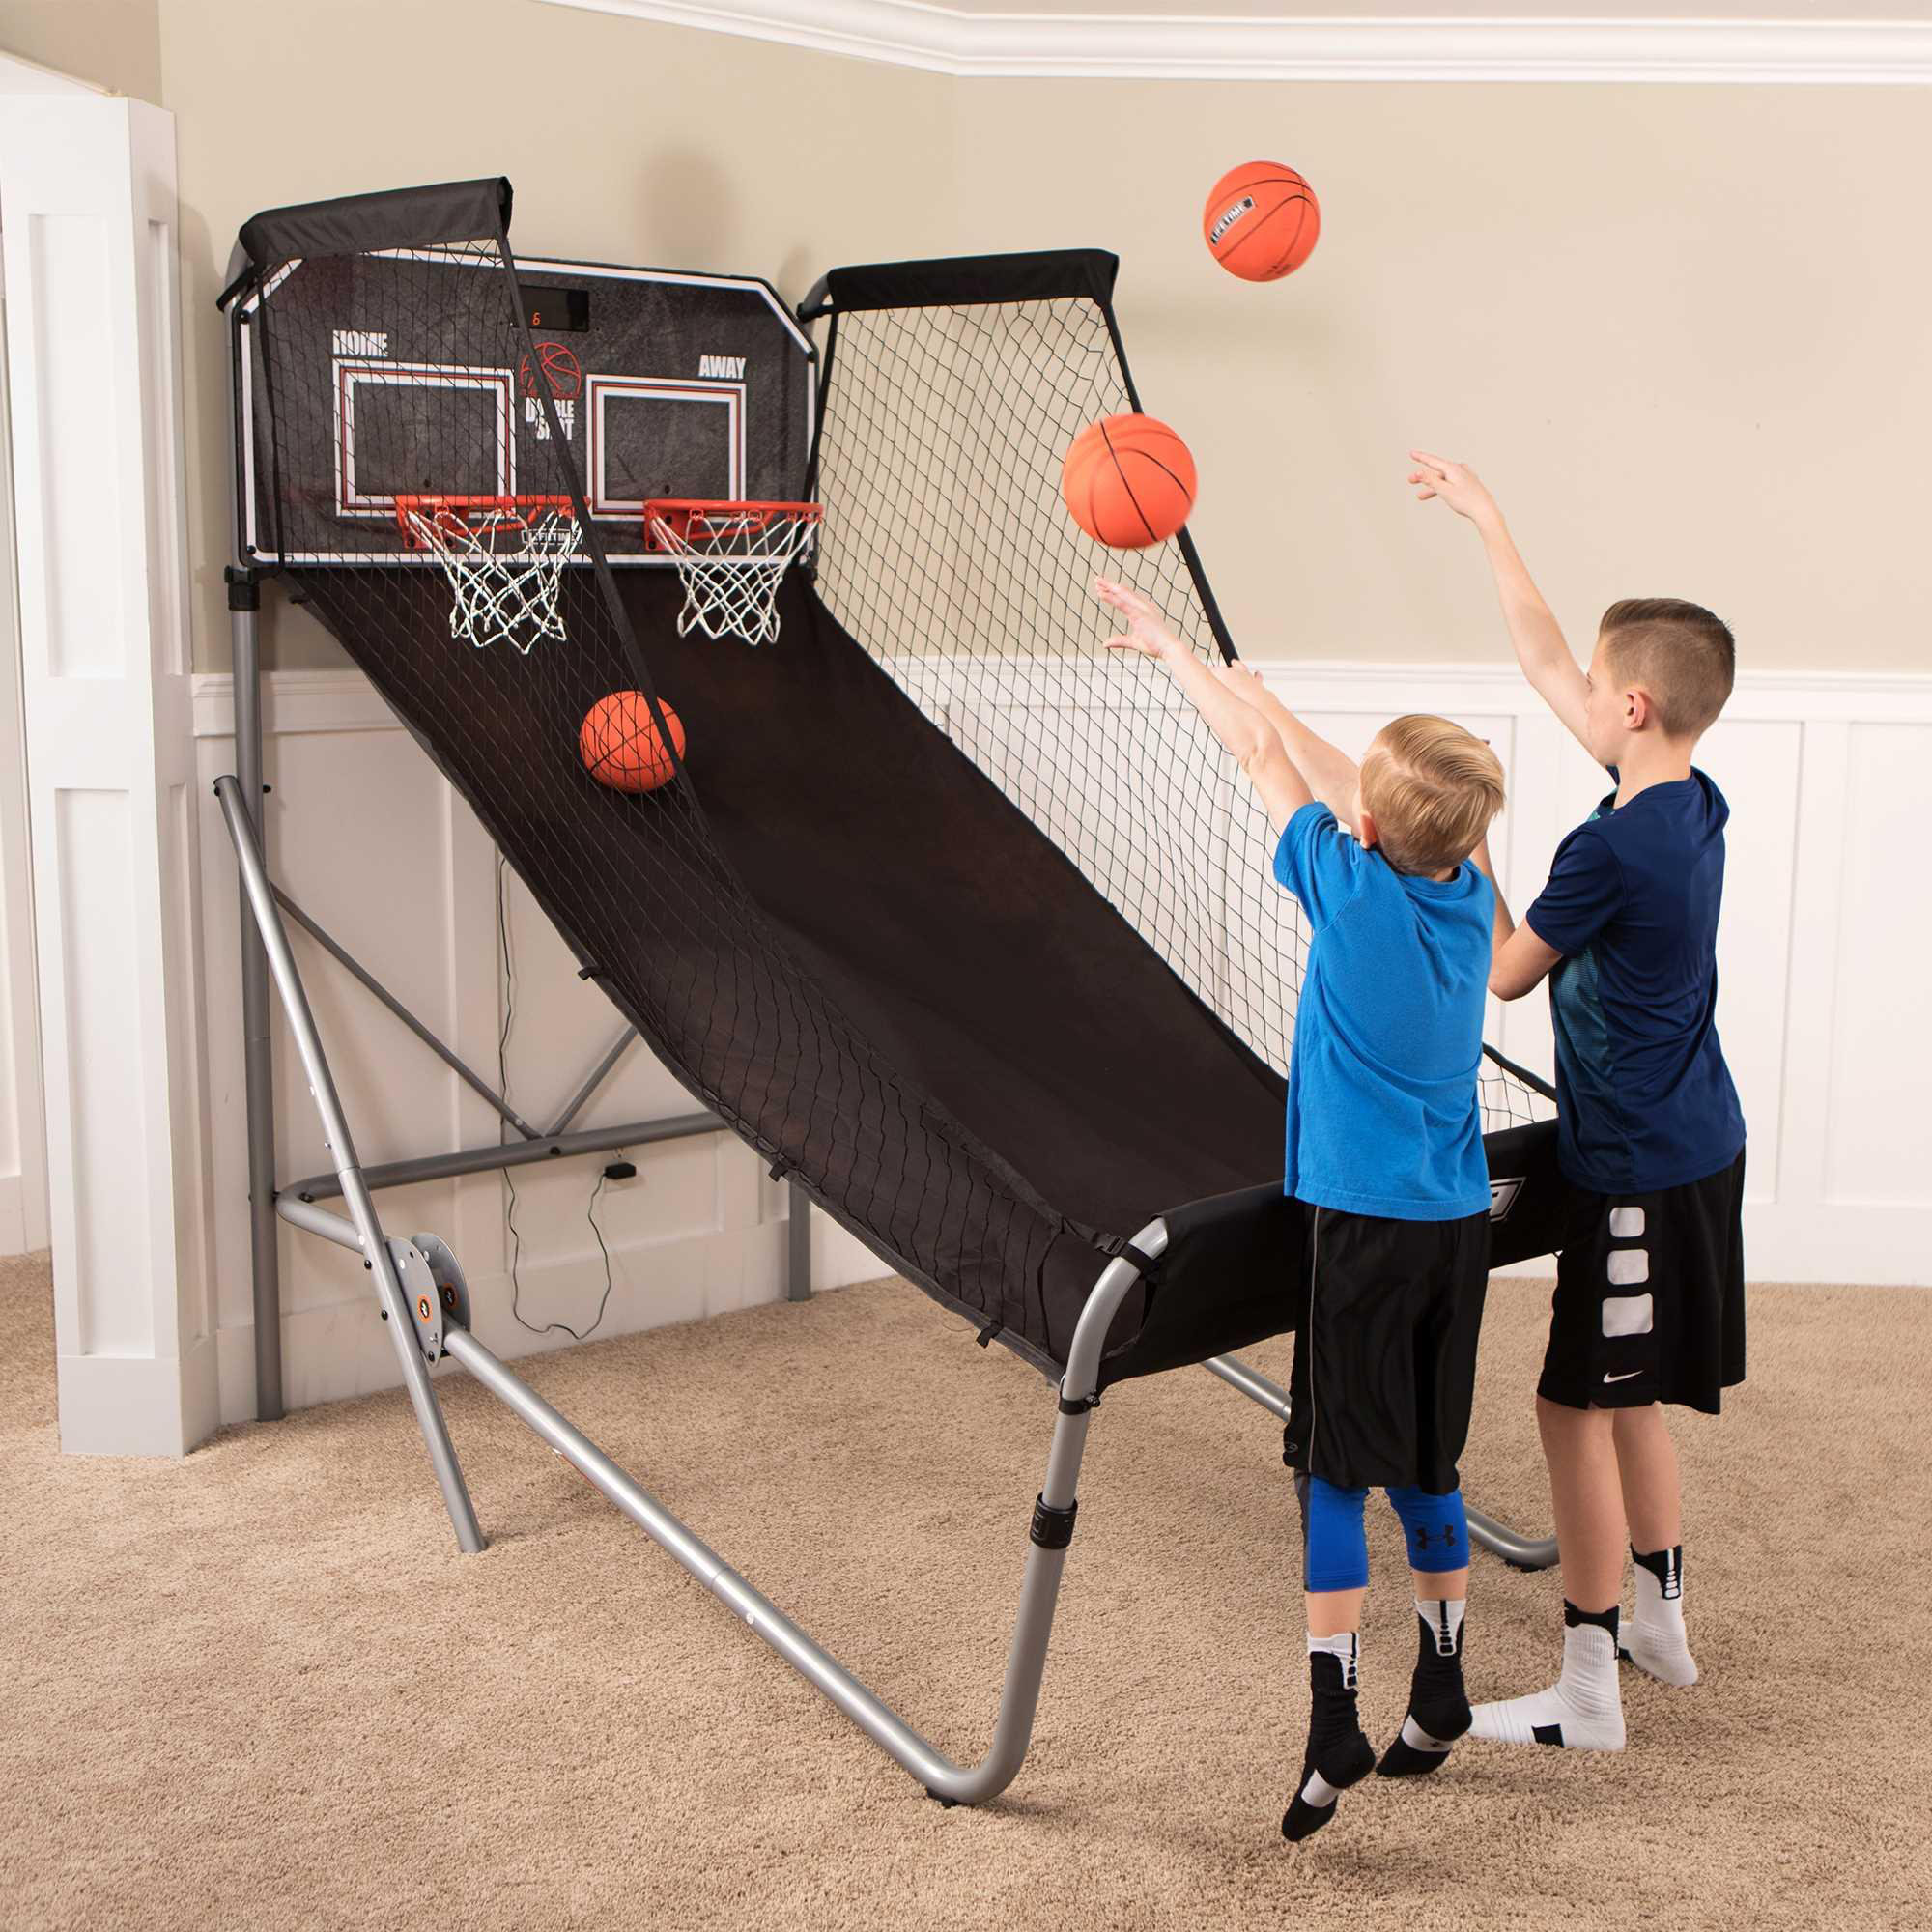 Play 2 player Basketball games at